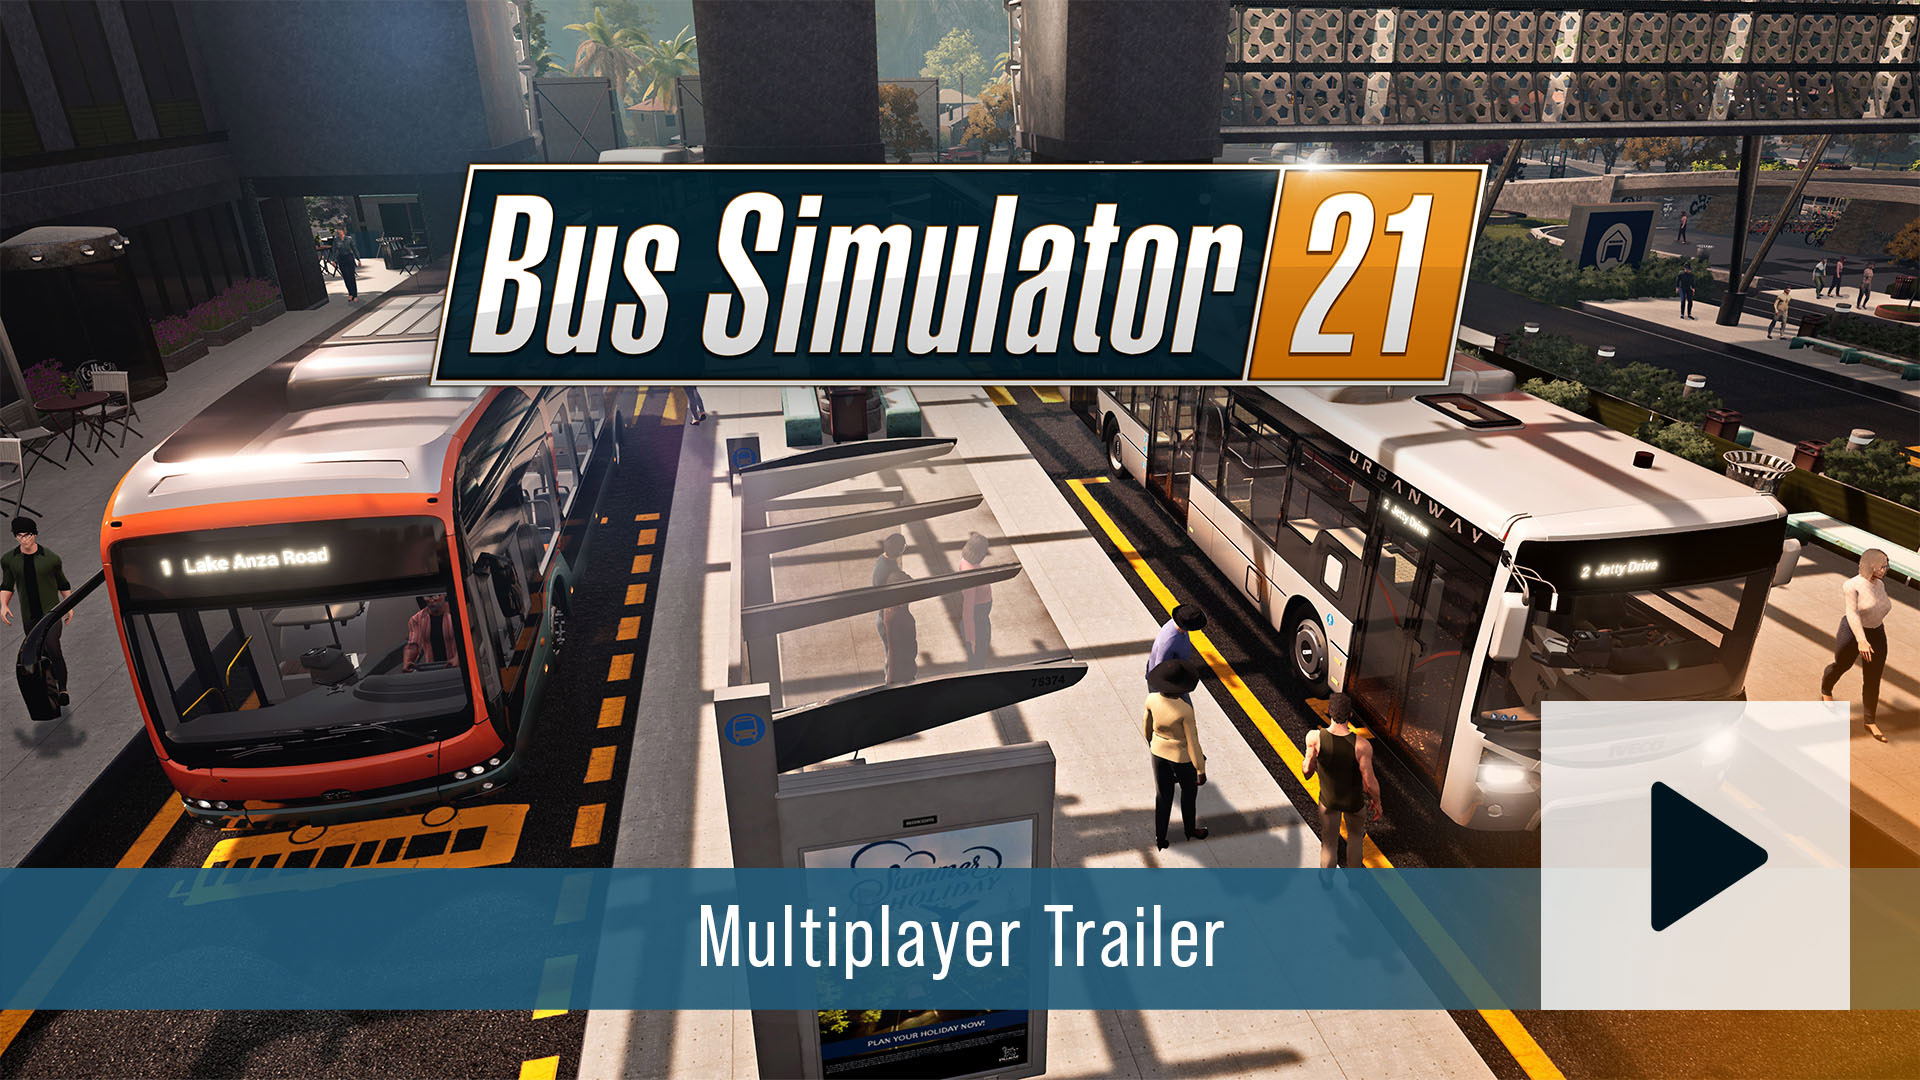 bus simulator 18 free download